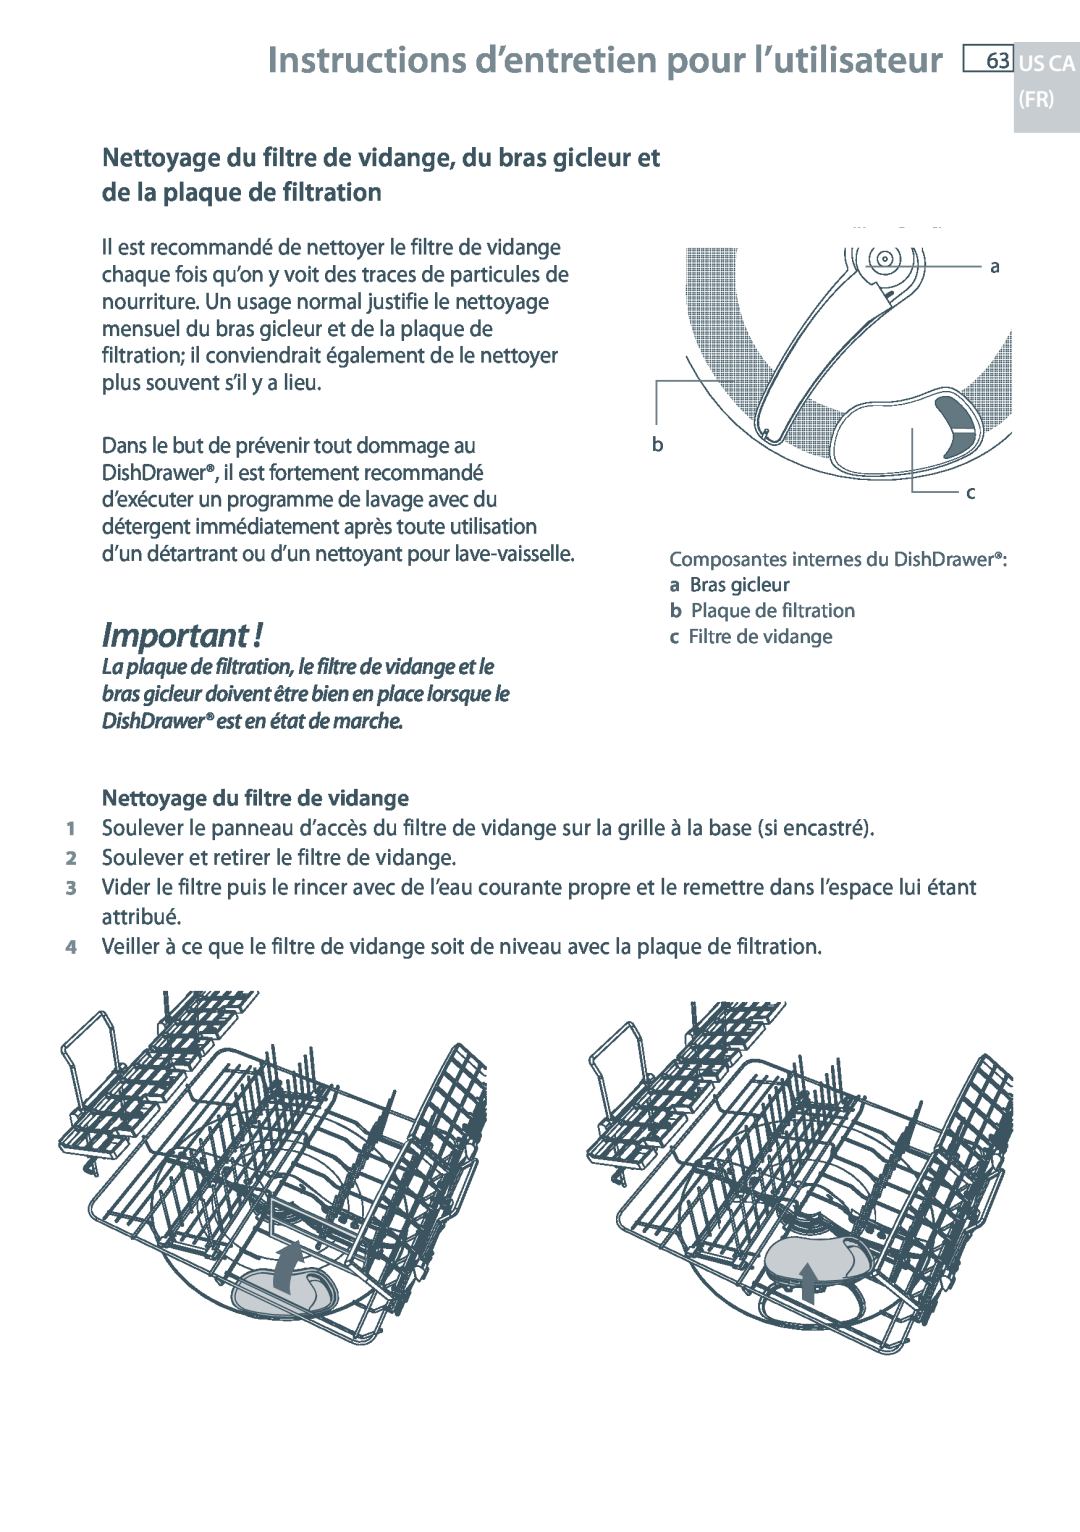 Fisher & Paykel DD24 manual Instructions d’entretien pour l’utilisateur, Nettoyage du filtre de vidange 